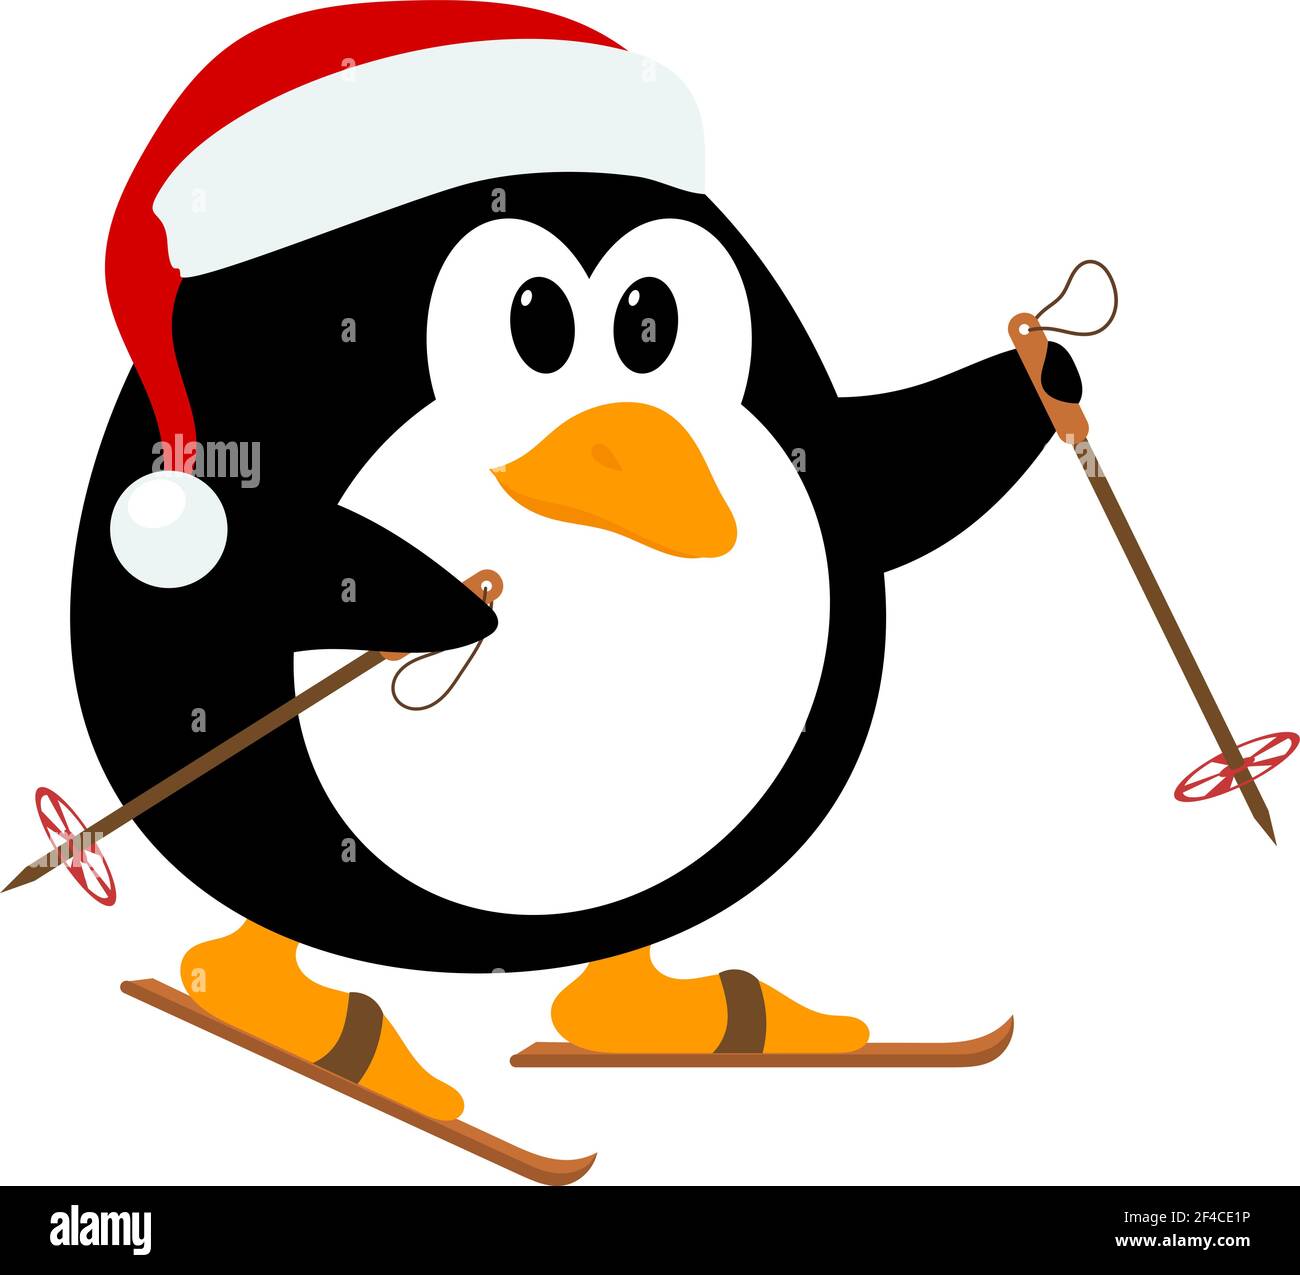 Vektor-Illustration von niedlichen kleinen Pinguin trägt einen Hut von Santa Claus auf Skiern. Wintersport. Baby Pinguin auf Skiern. Stock Vektor